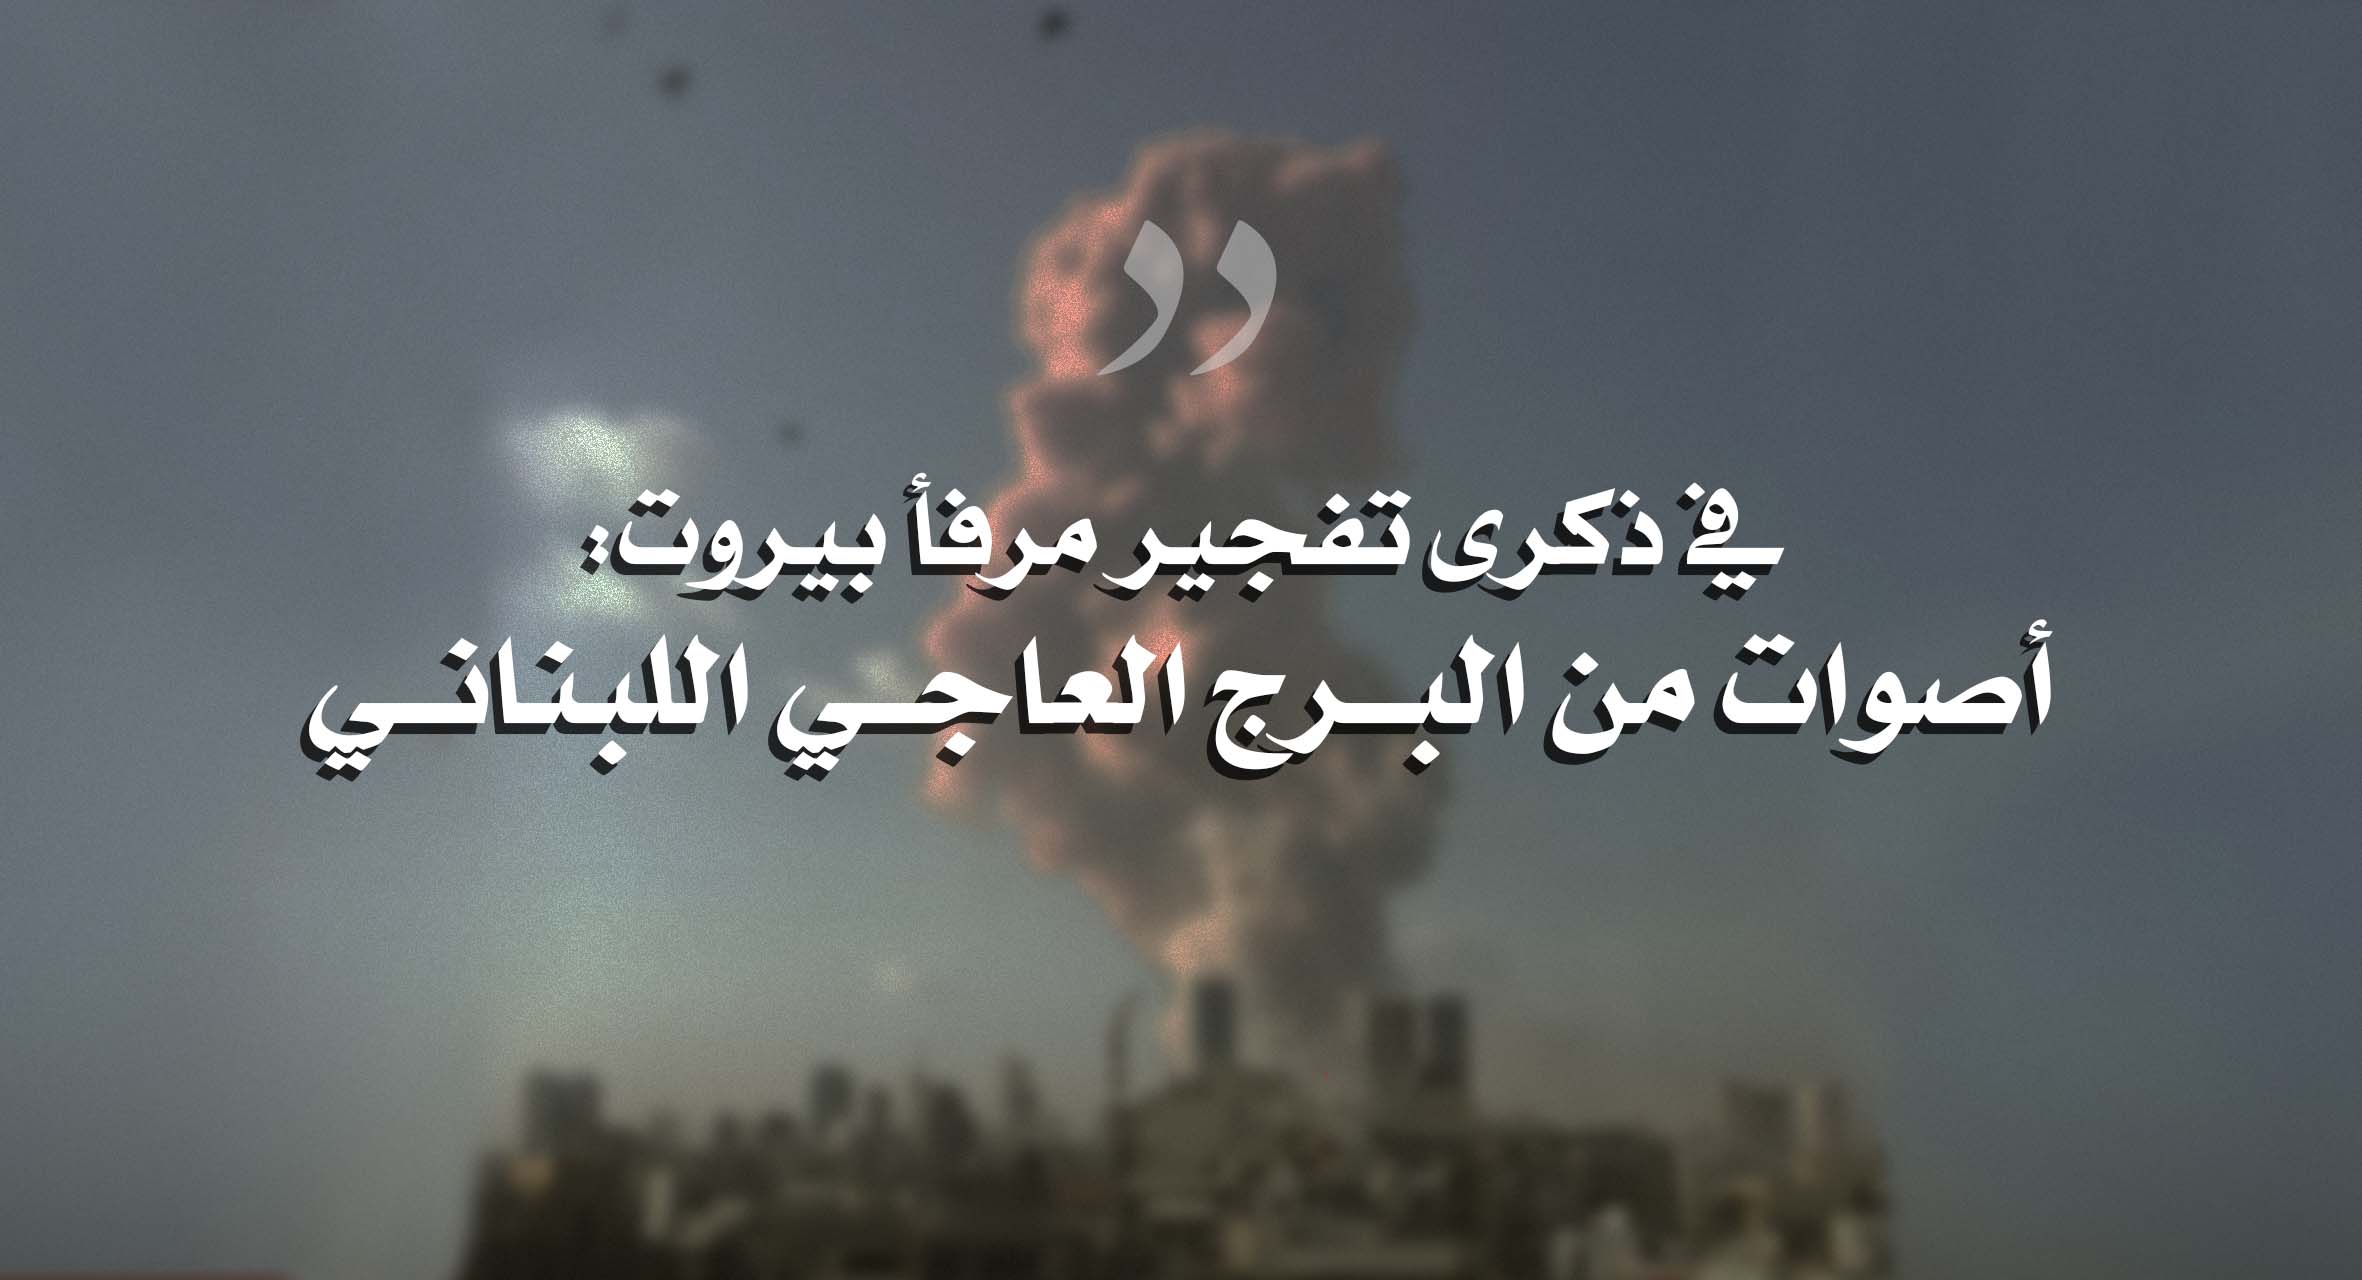 صورة في ذكرى تفجير مرفأ بيروت: أصوات من البرج العاجي اللبناني 